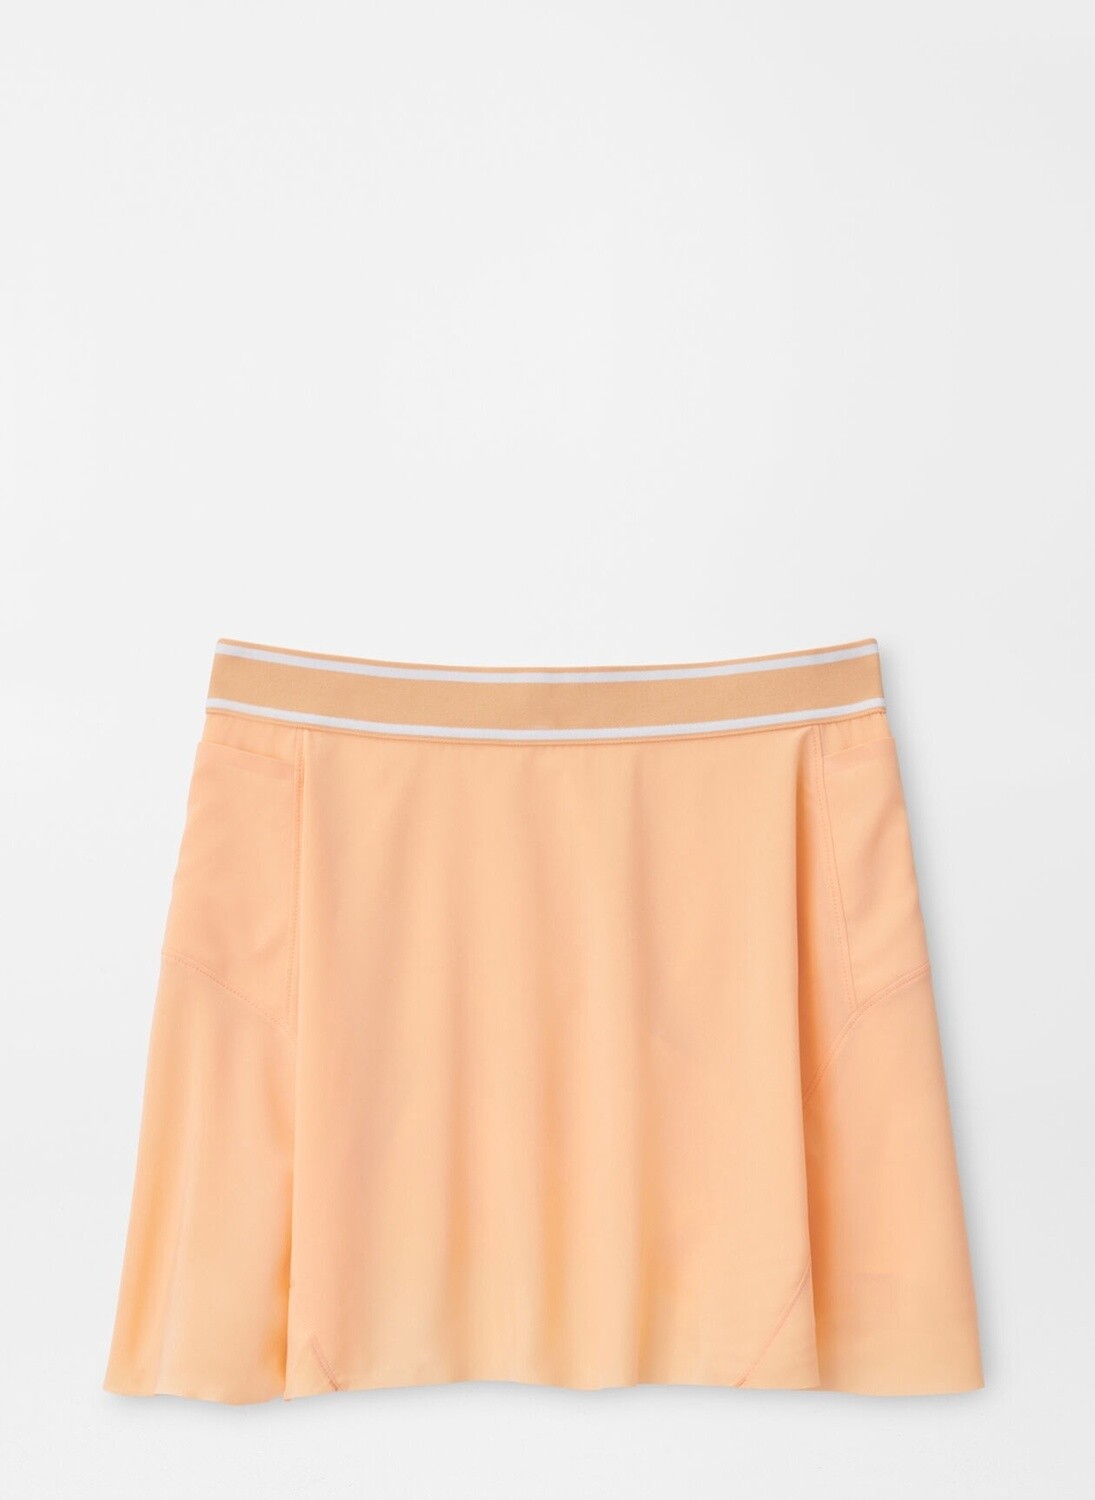 Carner Skort, Color: Orange Sorbet, Size: XS